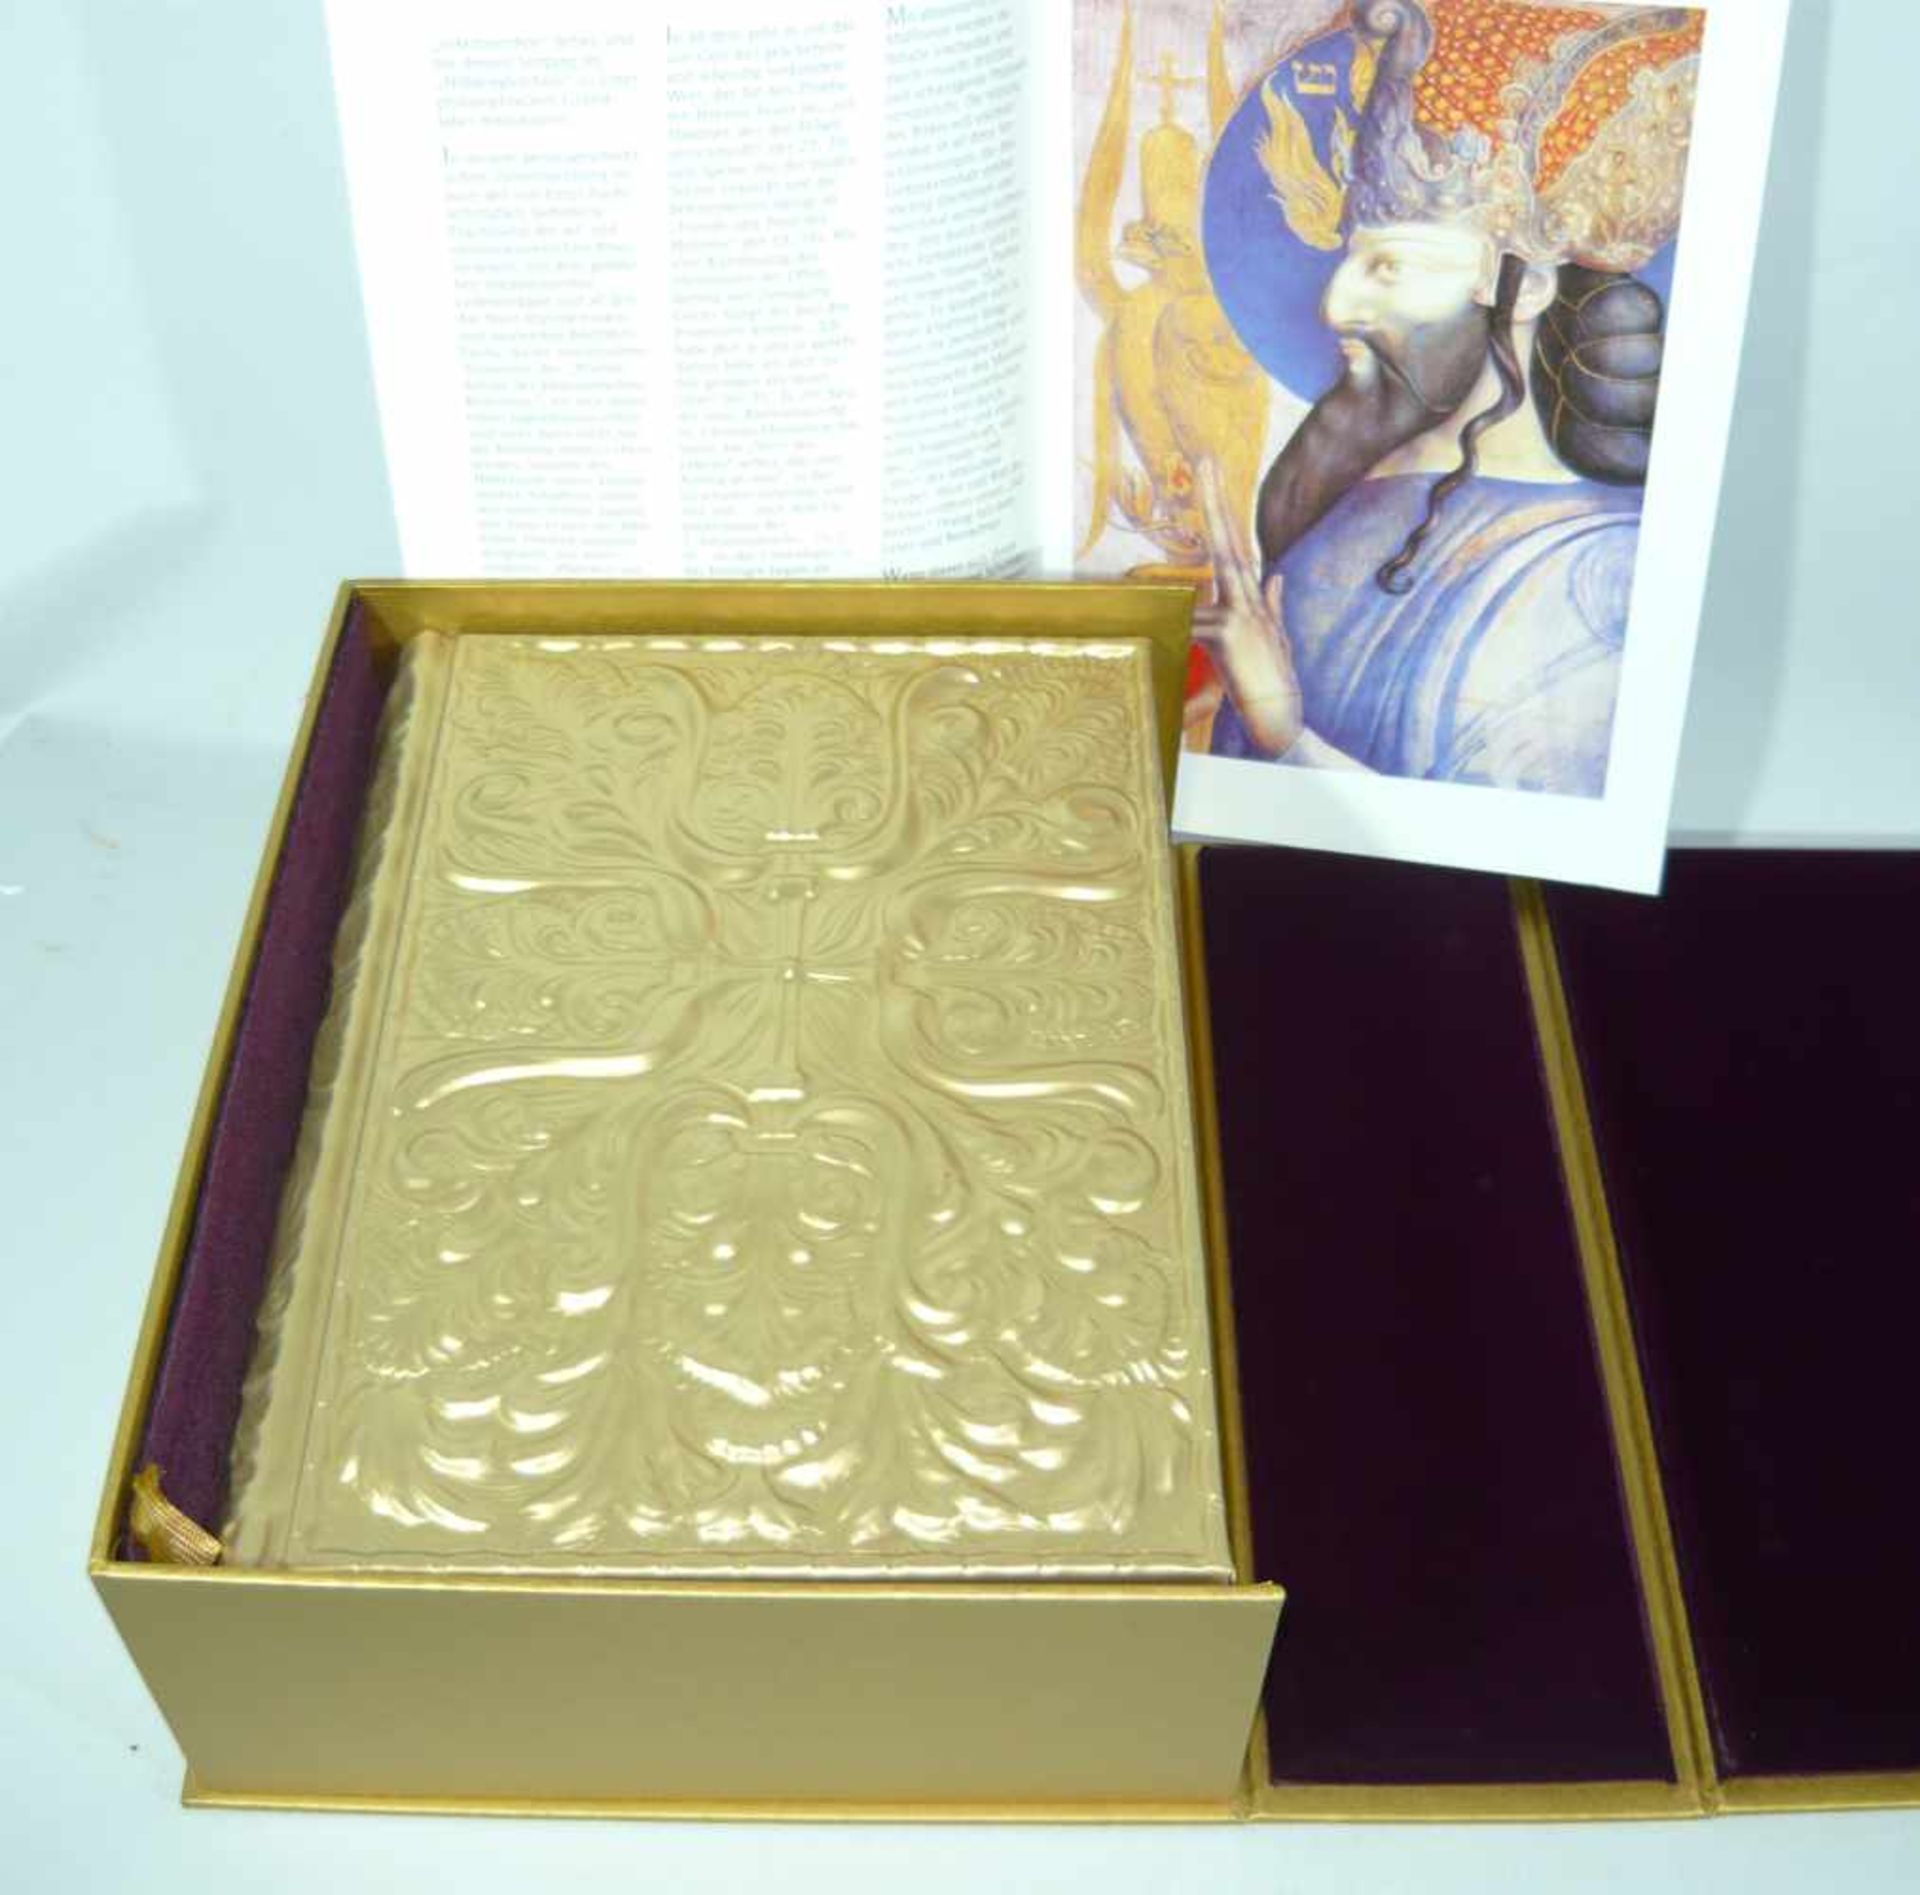 Ernst Fuchs Bibel in Kasette. Metalleinband mit Prägung. Nummeriert 8905. Kasette ca. 11x25x31 cm.